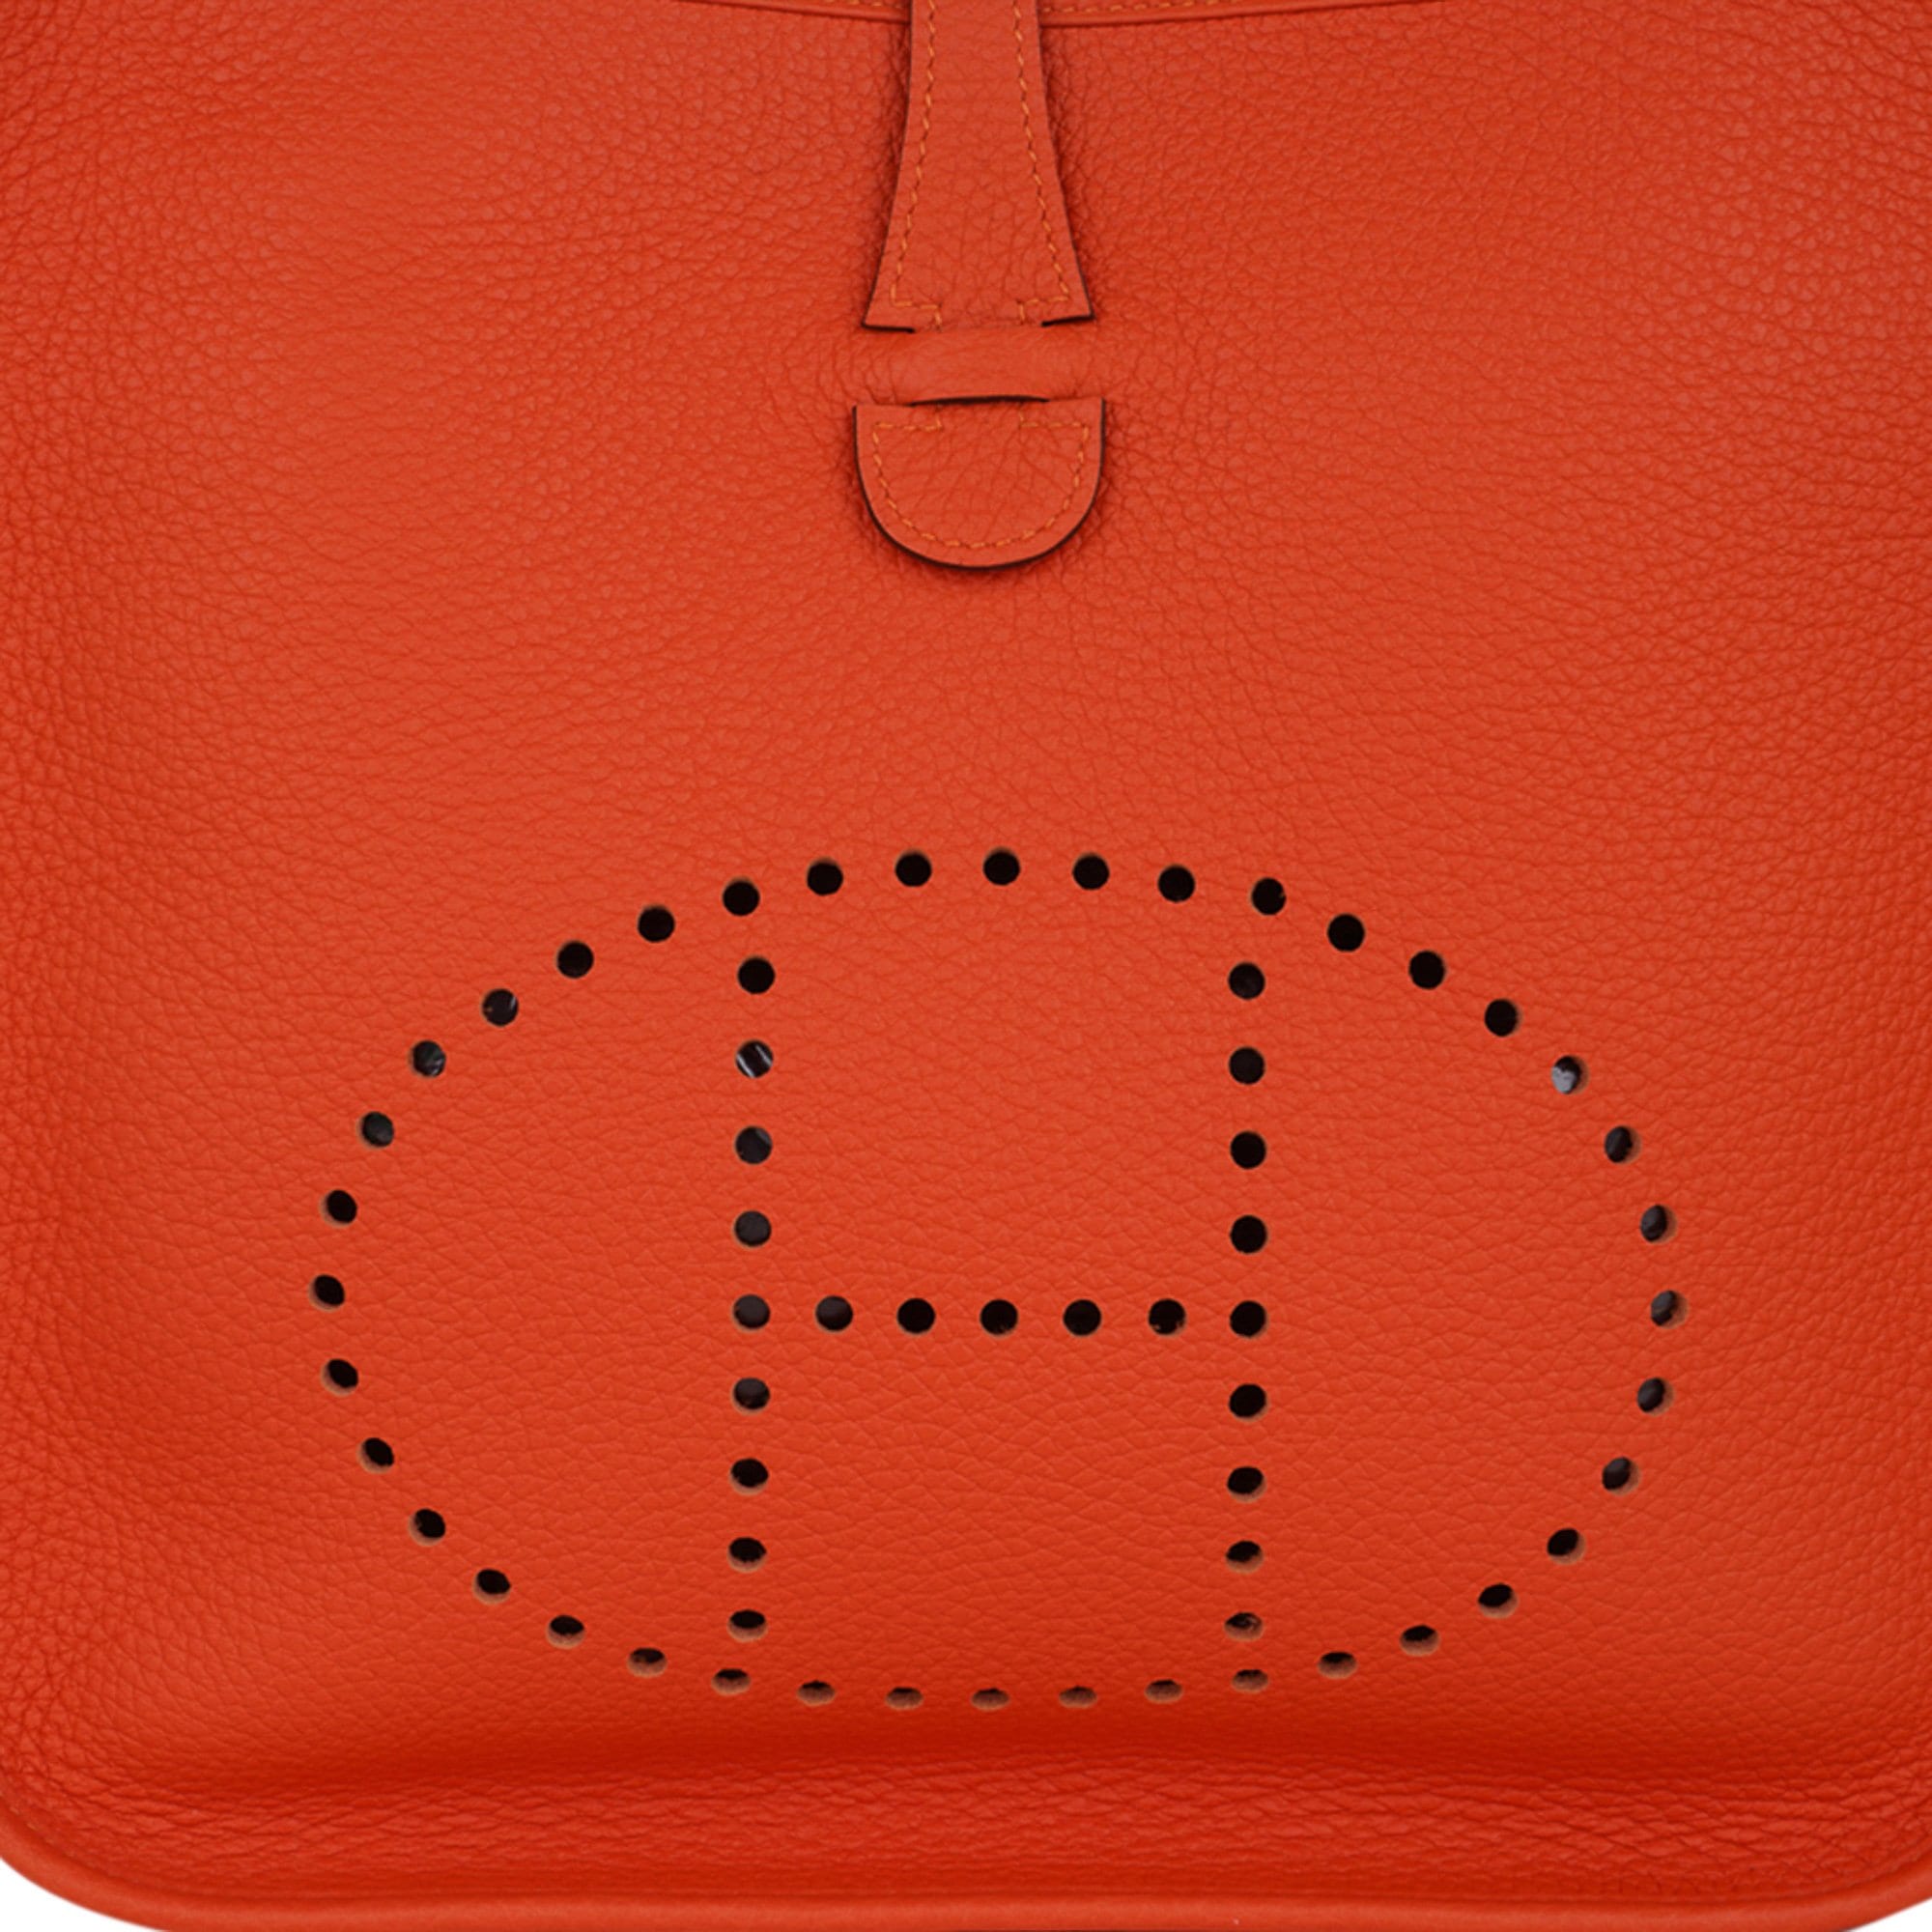 Hermès Vintage - Clemence Evelyne I TPM - Orange - Leather Handbag -  Avvenice